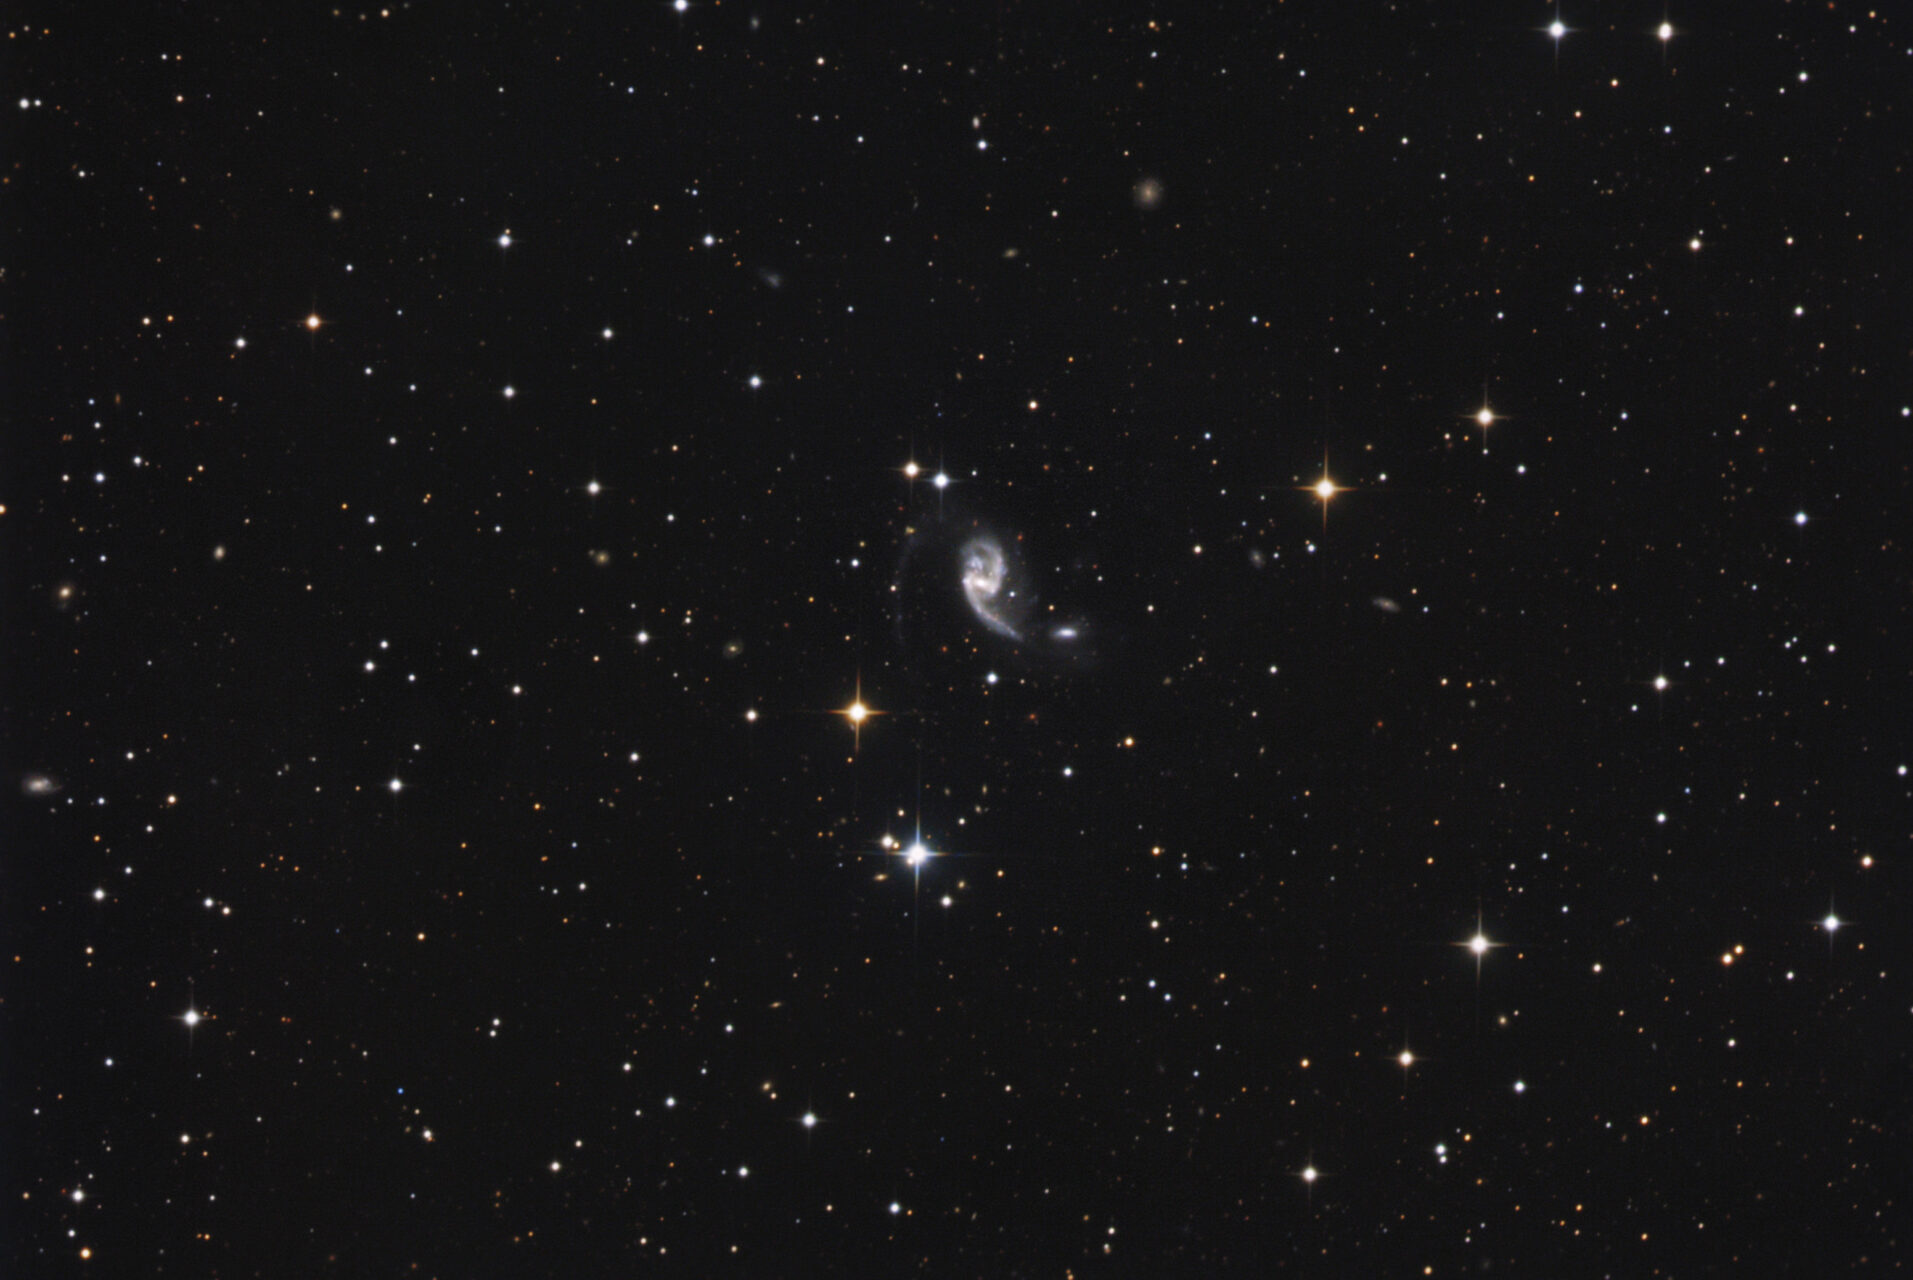 NGC 5996